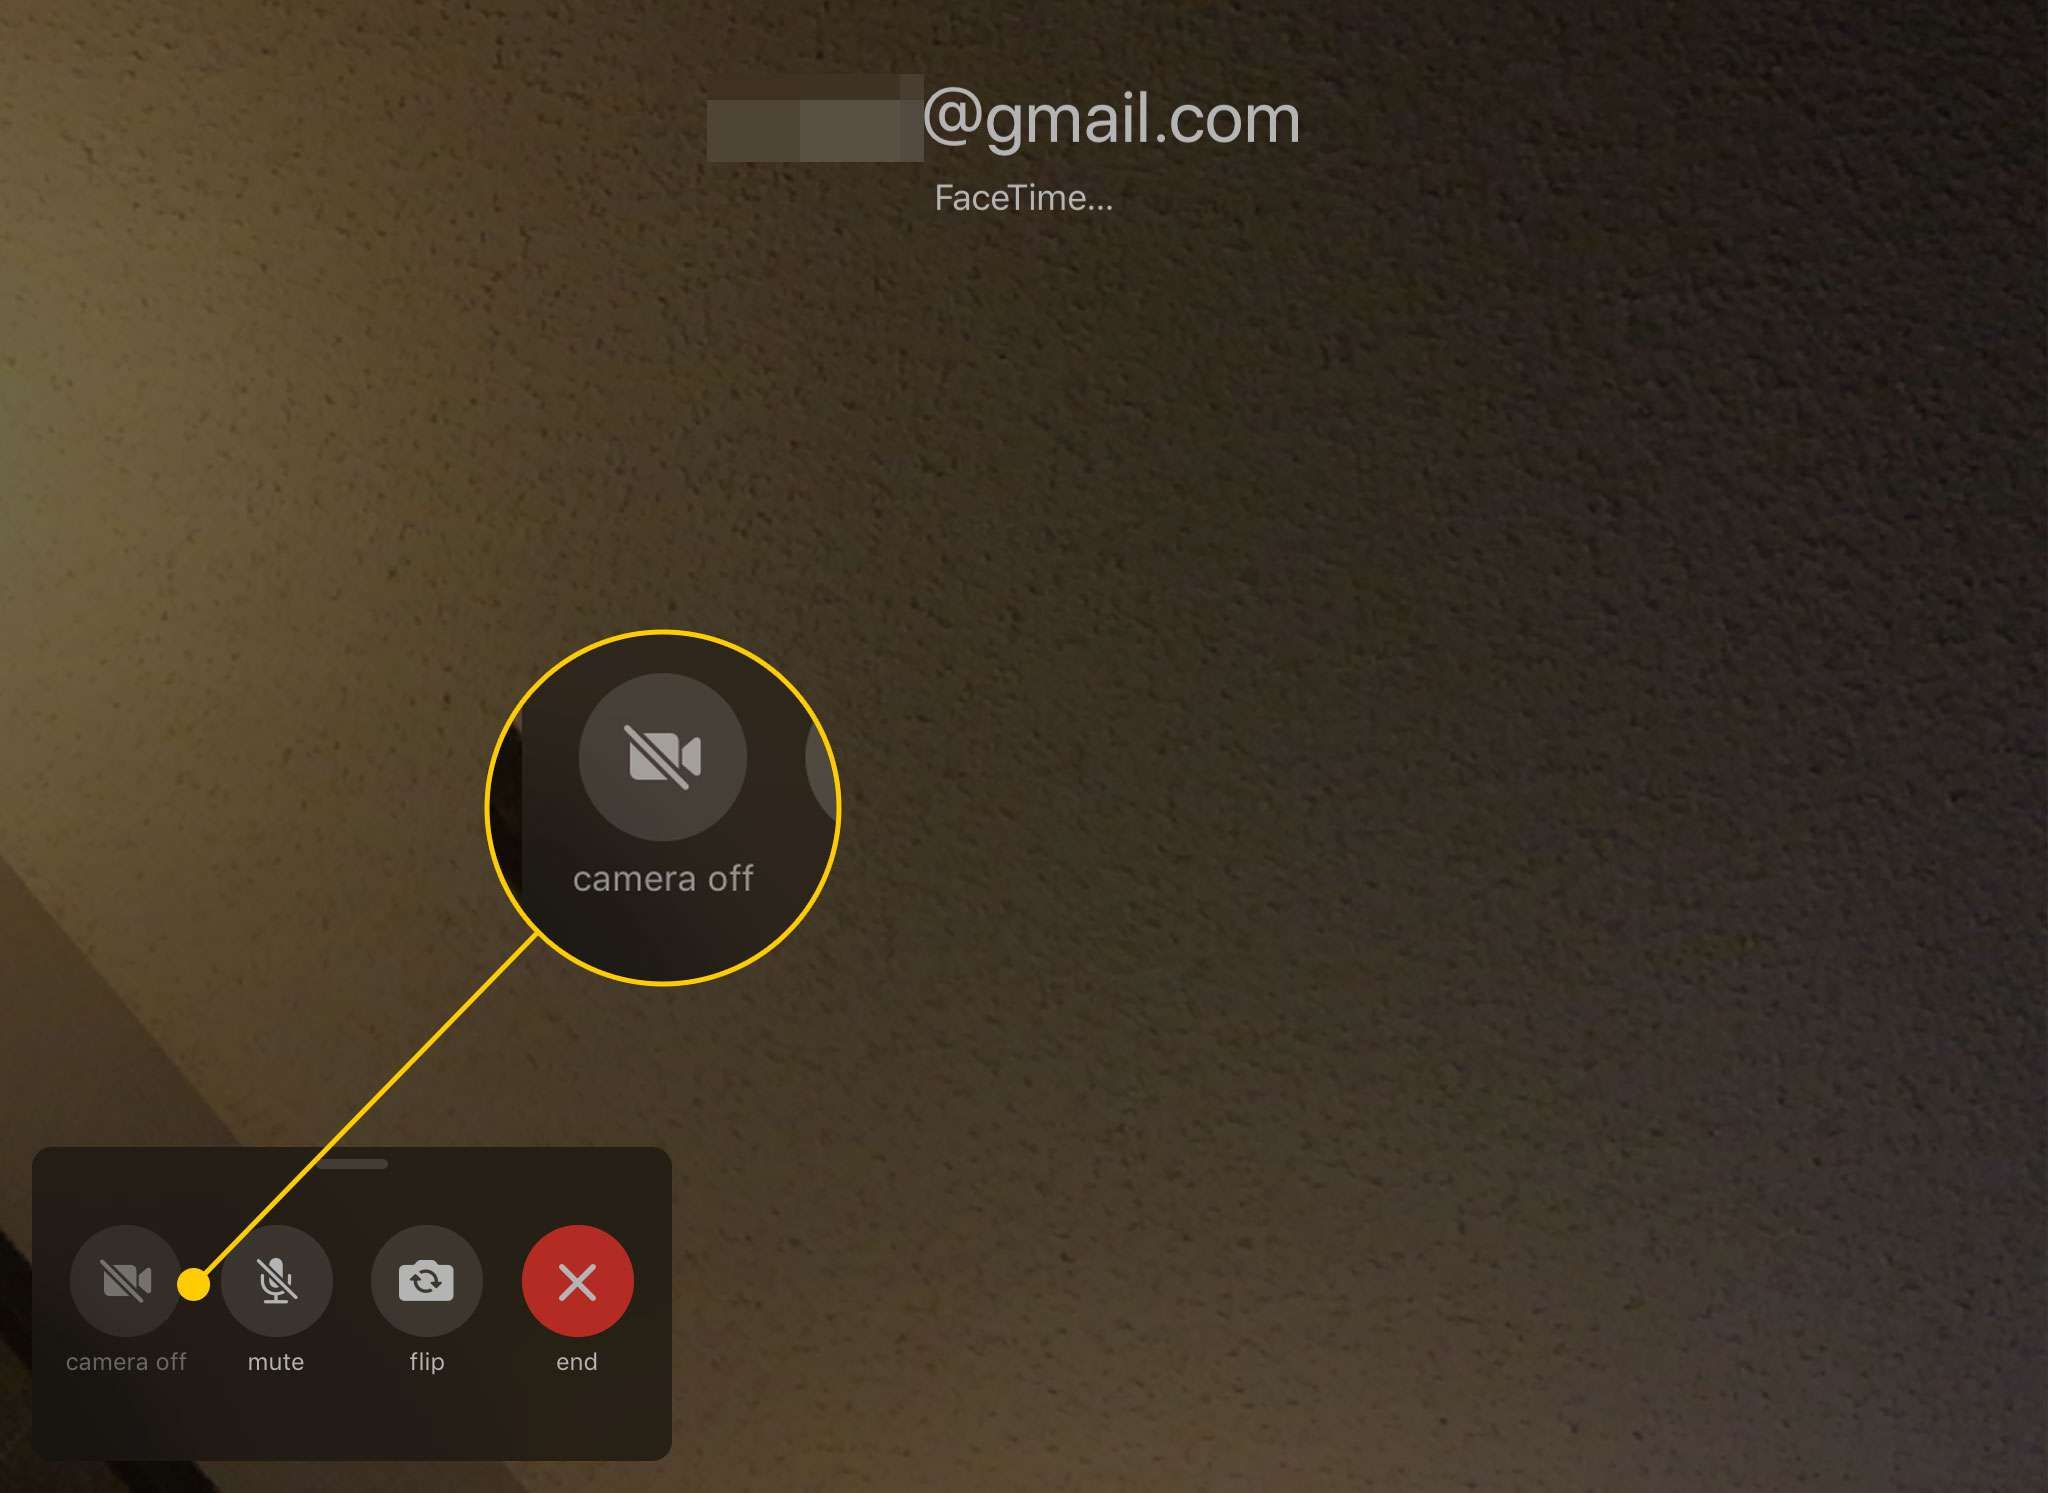 Вызов FaceTime на iPad с выделенной кнопкой выключения камеры